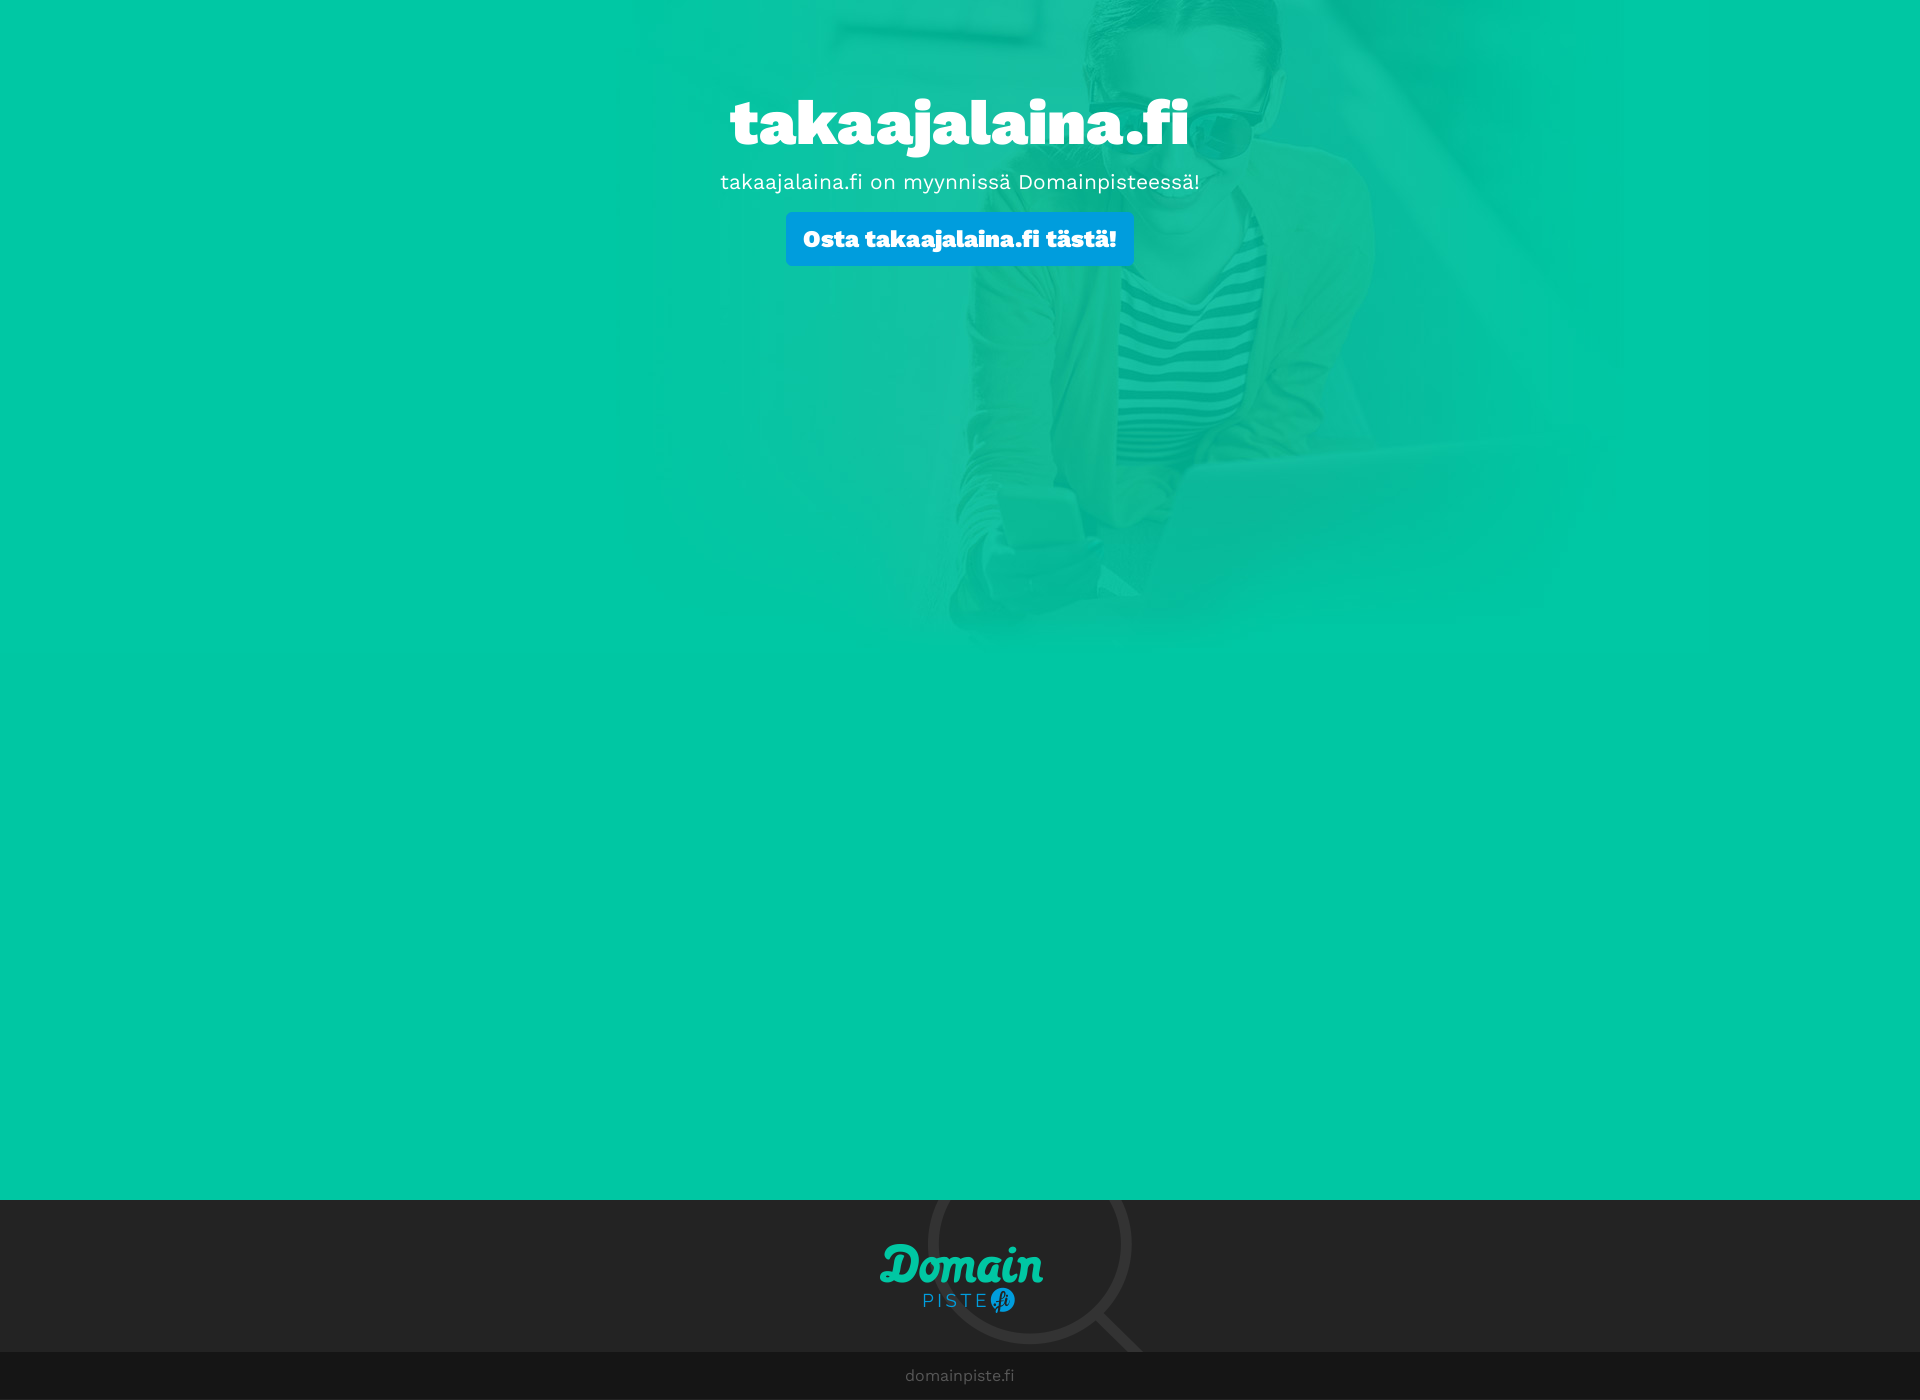 Skärmdump för takaajalaina.fi